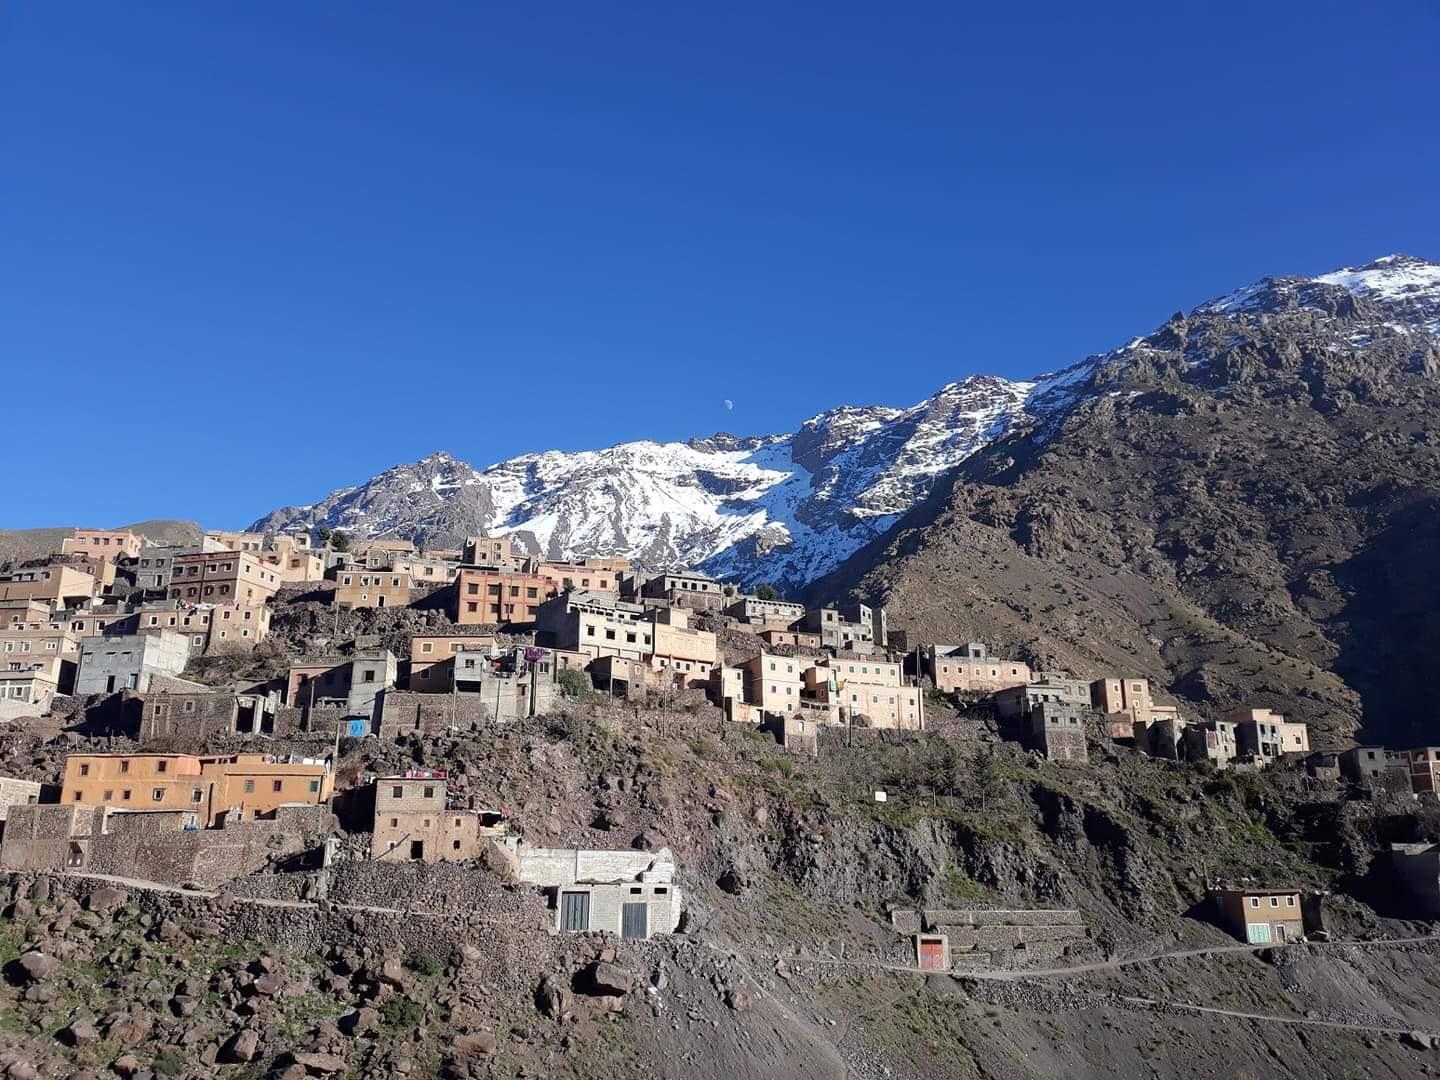  IMLIL:  De to kvinnene skal ha blitt funnet i et avsidesliggende fjellområde i nærheten av landsbyen Imlil i Atlasfjellene. i Marokko.  